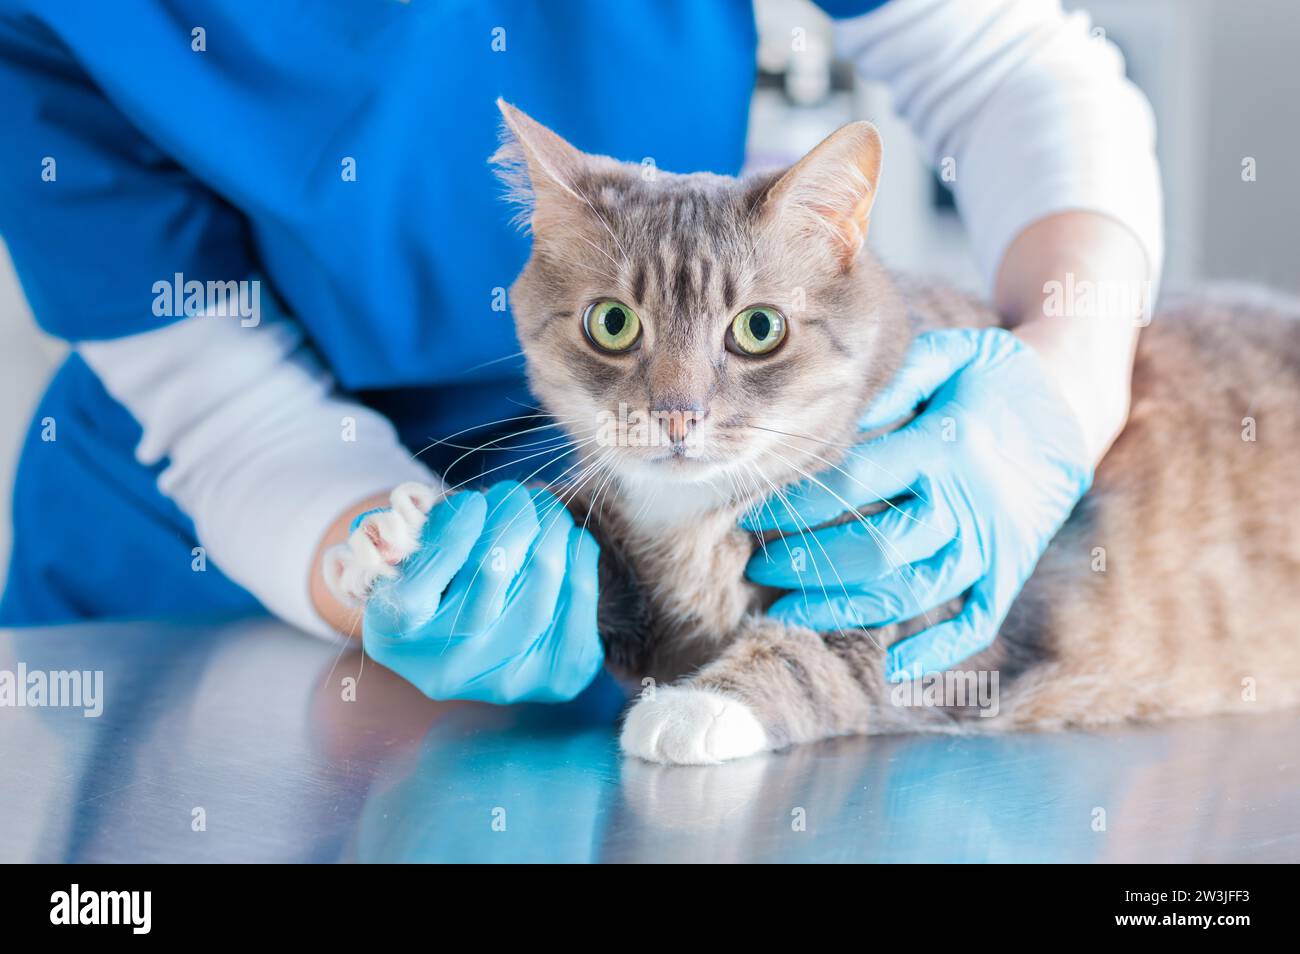 Bild einer schönen Katze, die von einem Arzt untersucht wird. Veterinärmedizinisches Konzept. Gemischte Medien Stockfoto